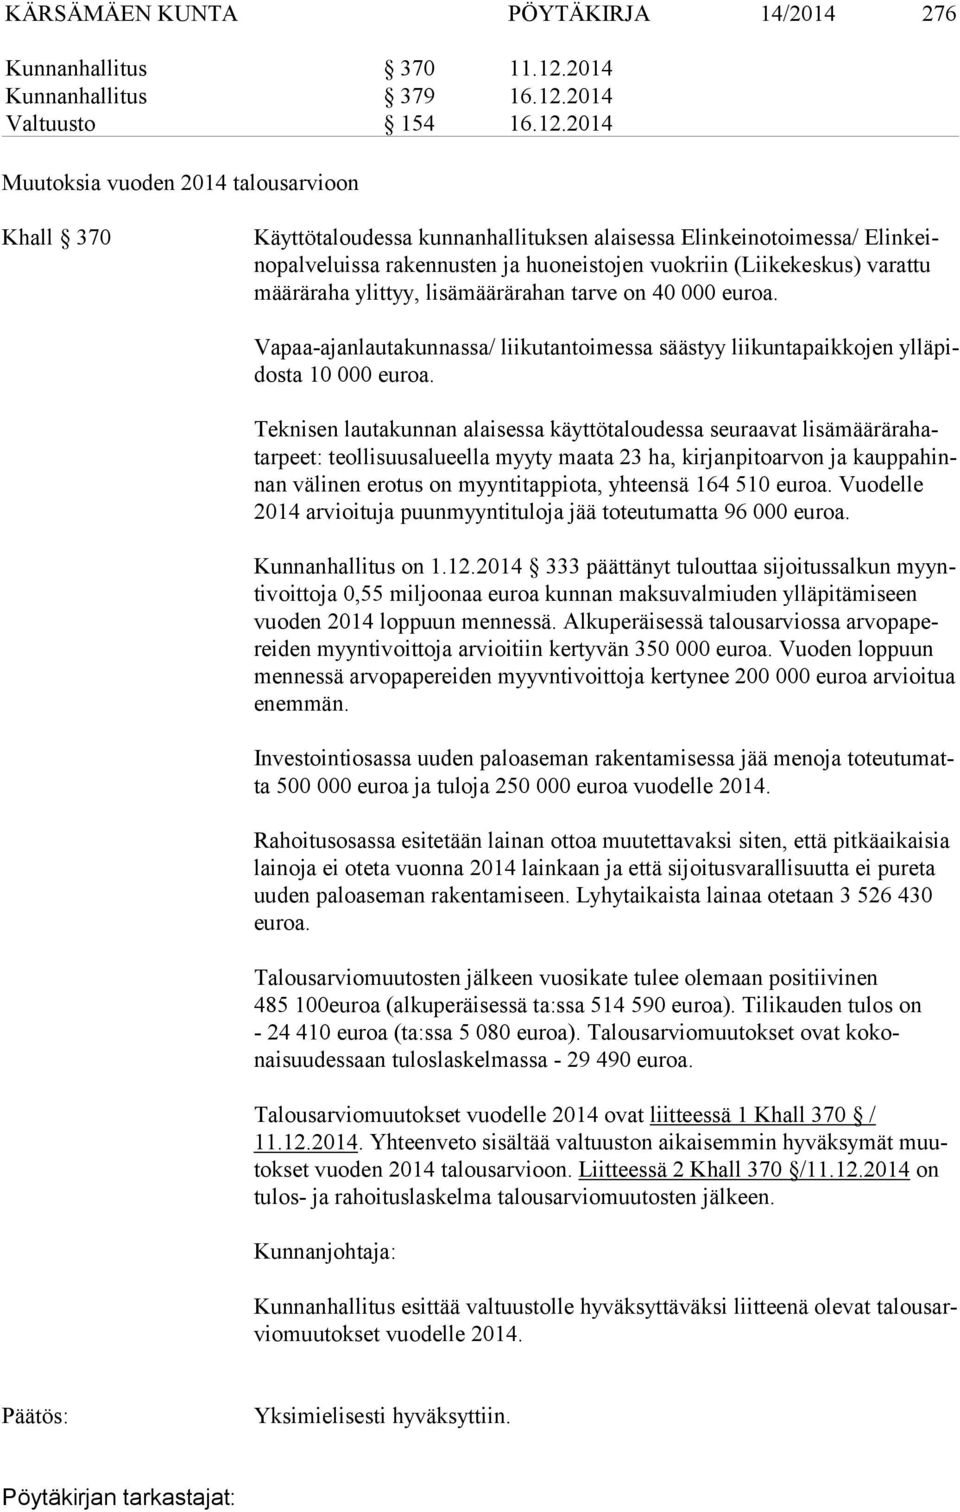 2014 Valtuusto 154 16.12.